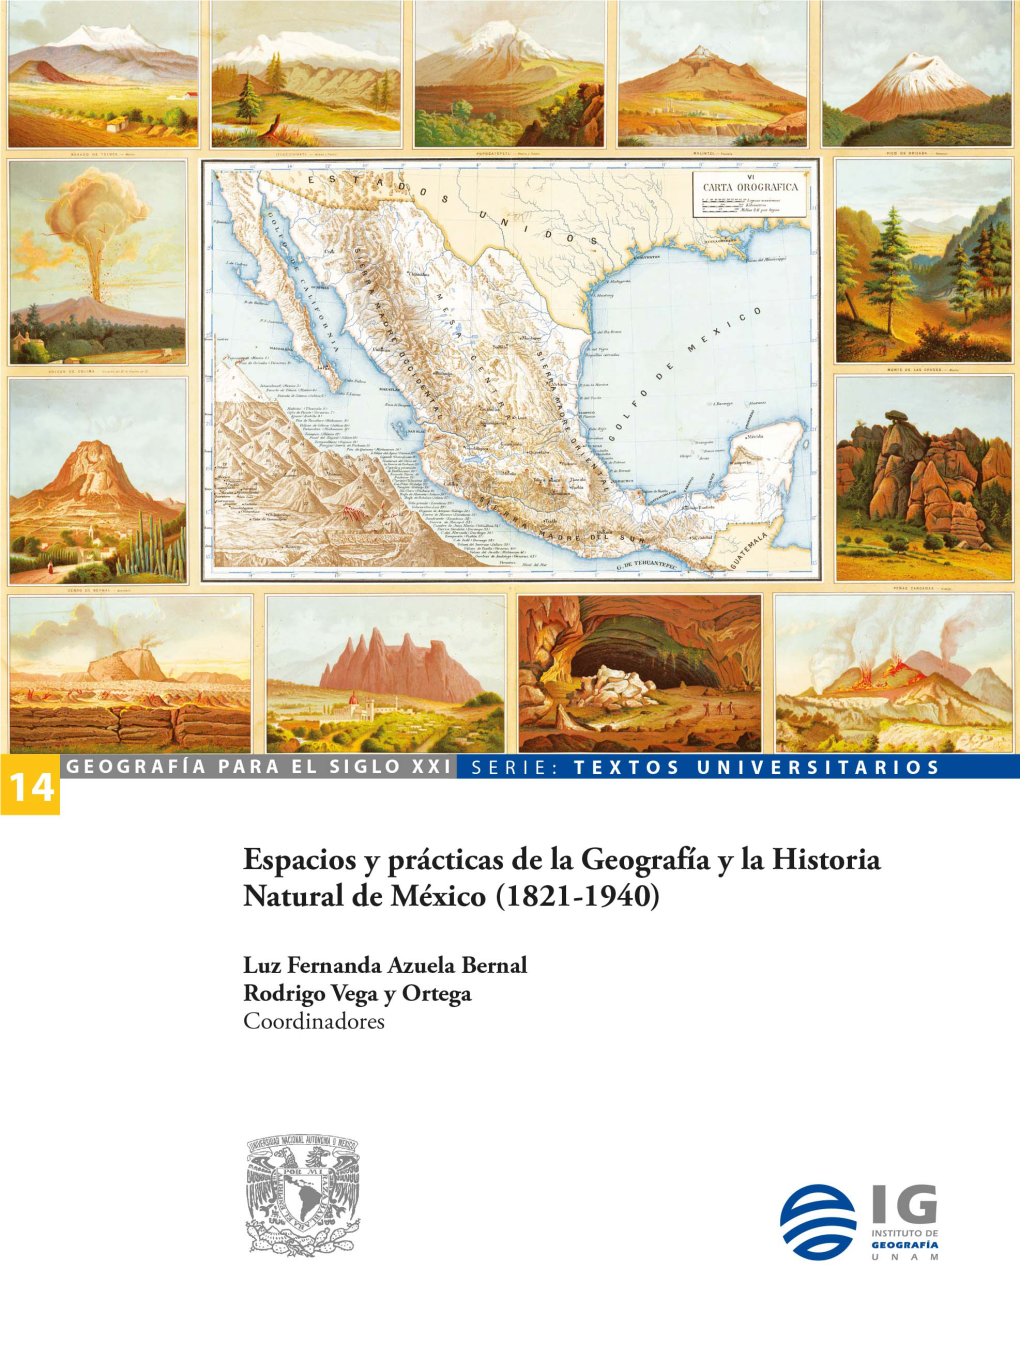 La Geografía Y Las Ciencias Naturales En Algunas Ciudades Y Regiones Mexicanas, 1787-1940”